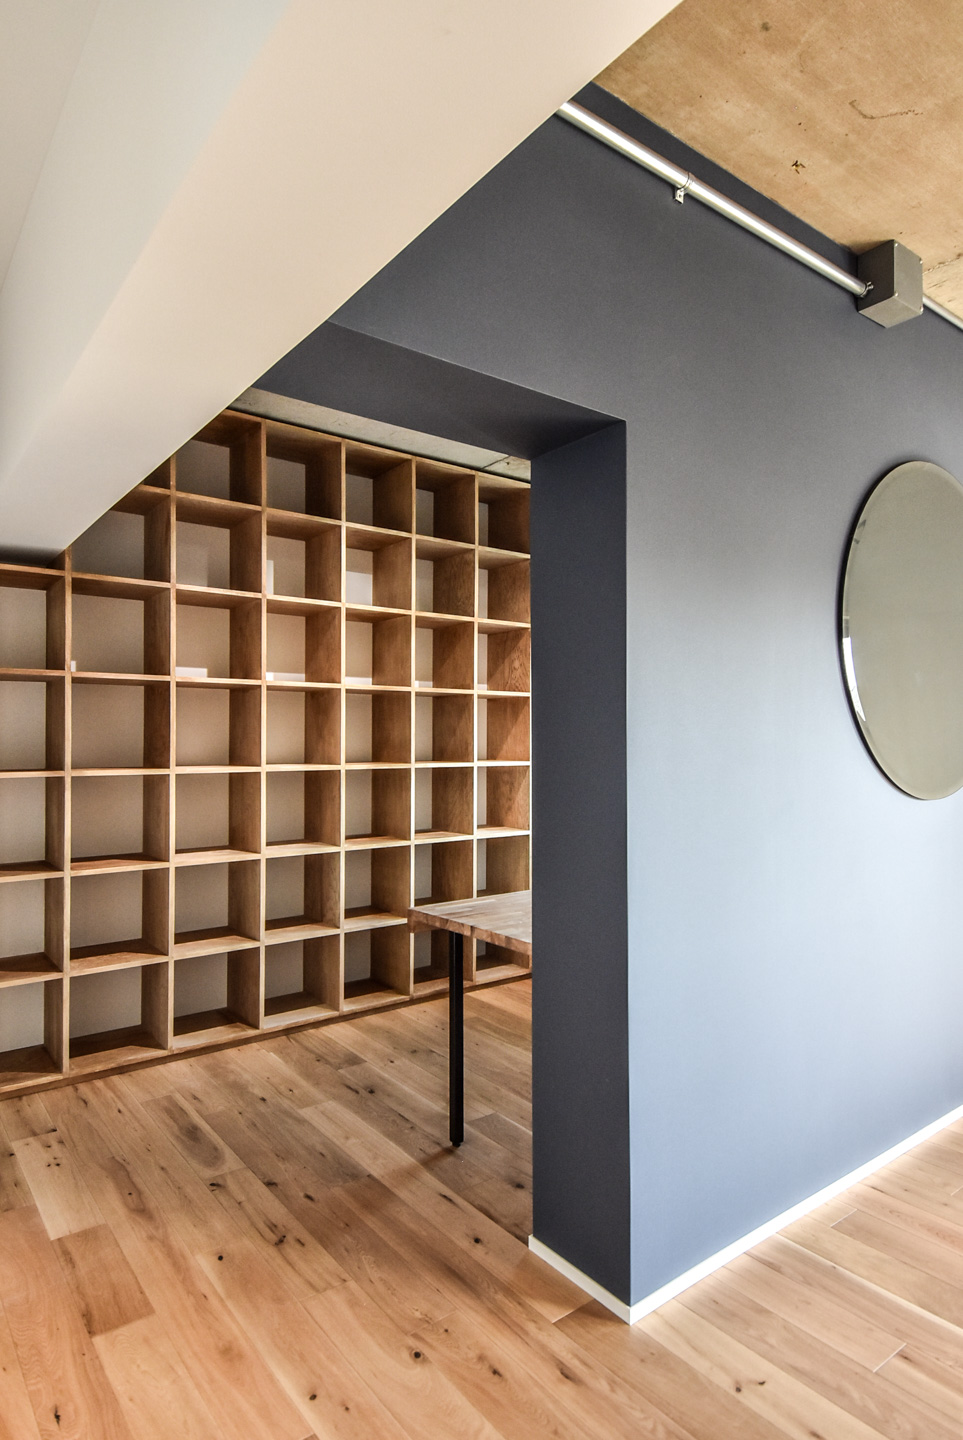 木製の床板とシンプルな本棚、中央に円形のミラーがある壁。